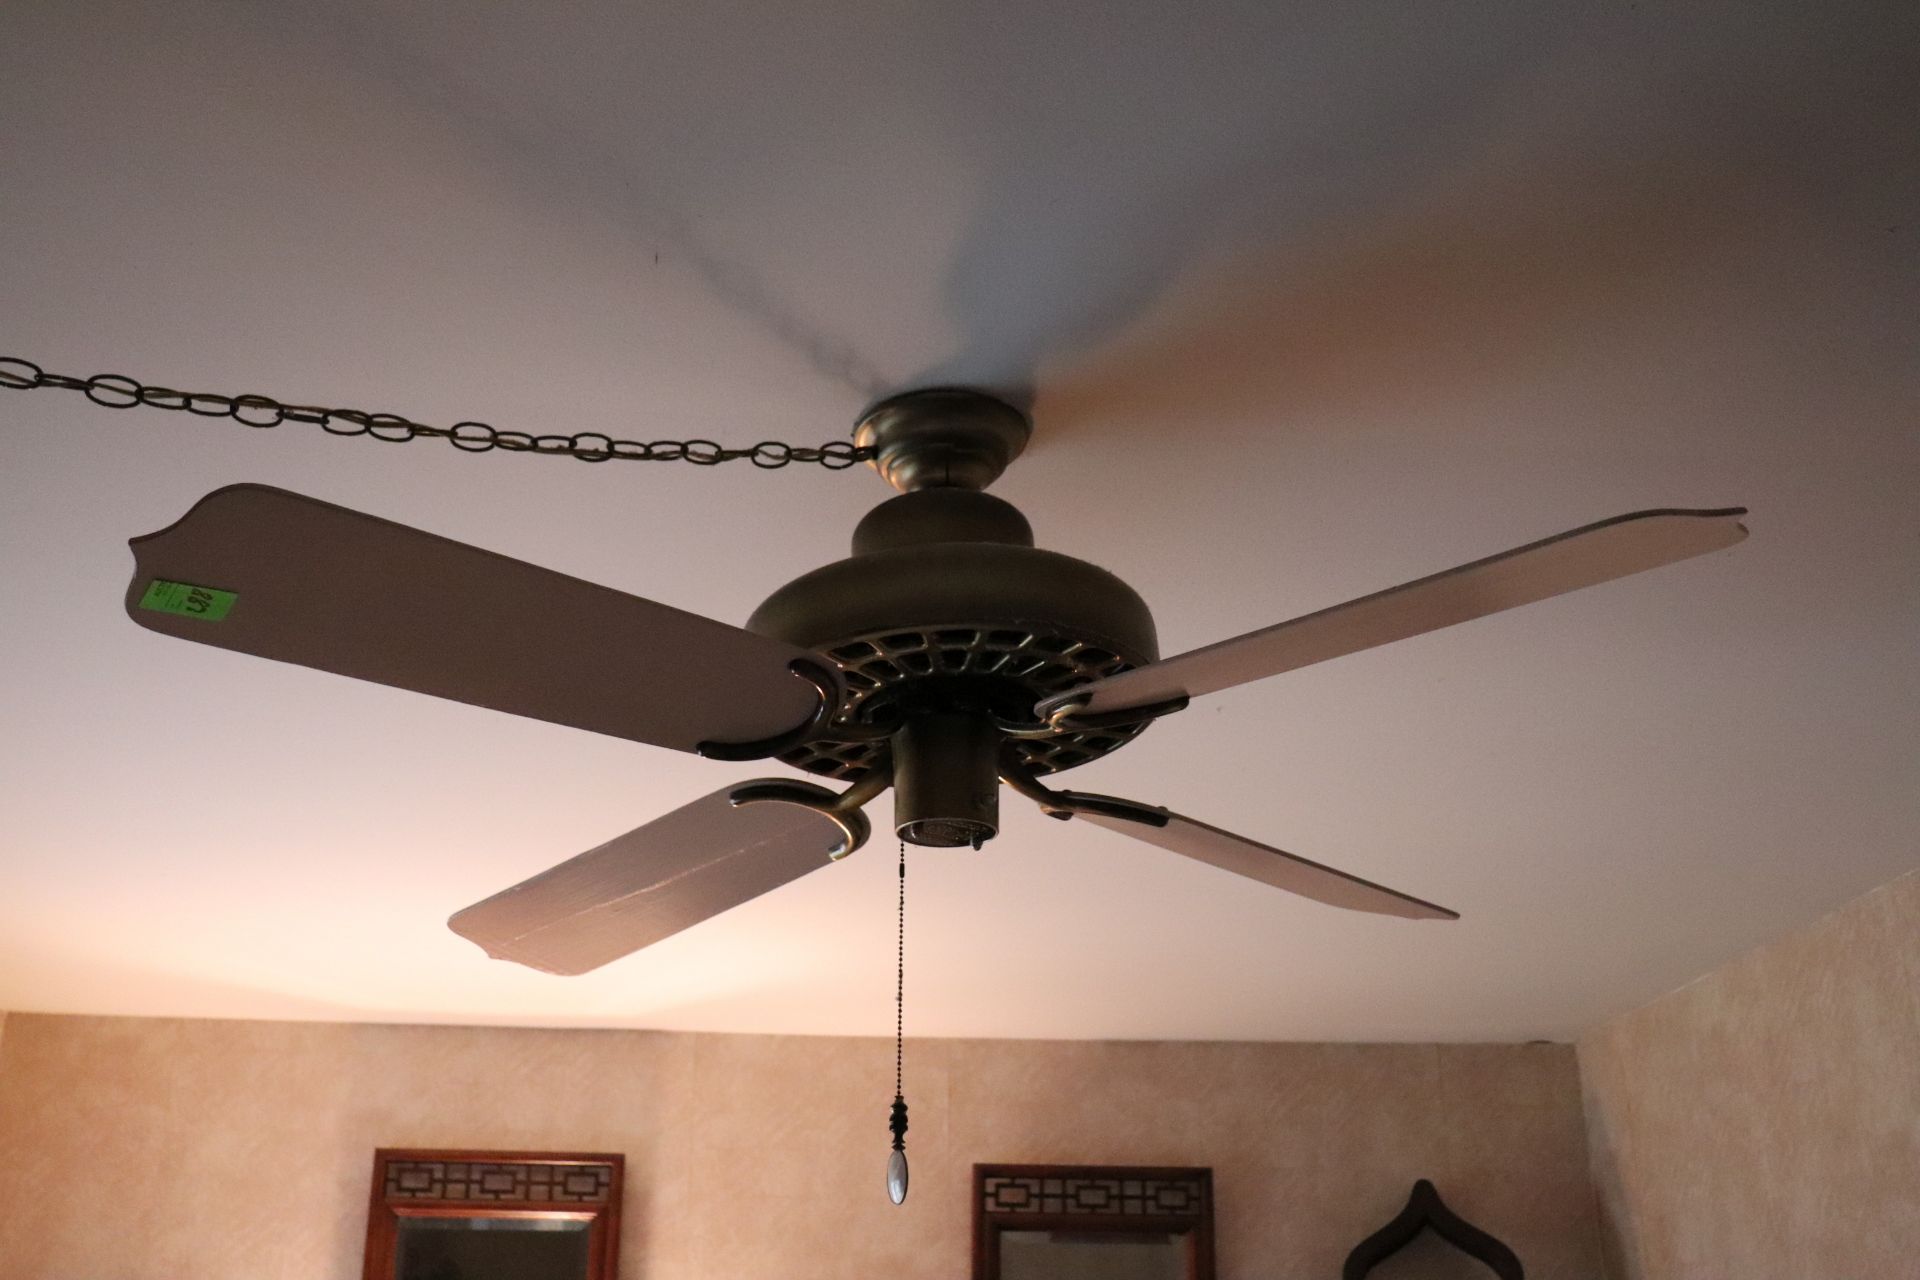 Ceiling fan by Island Fan Company